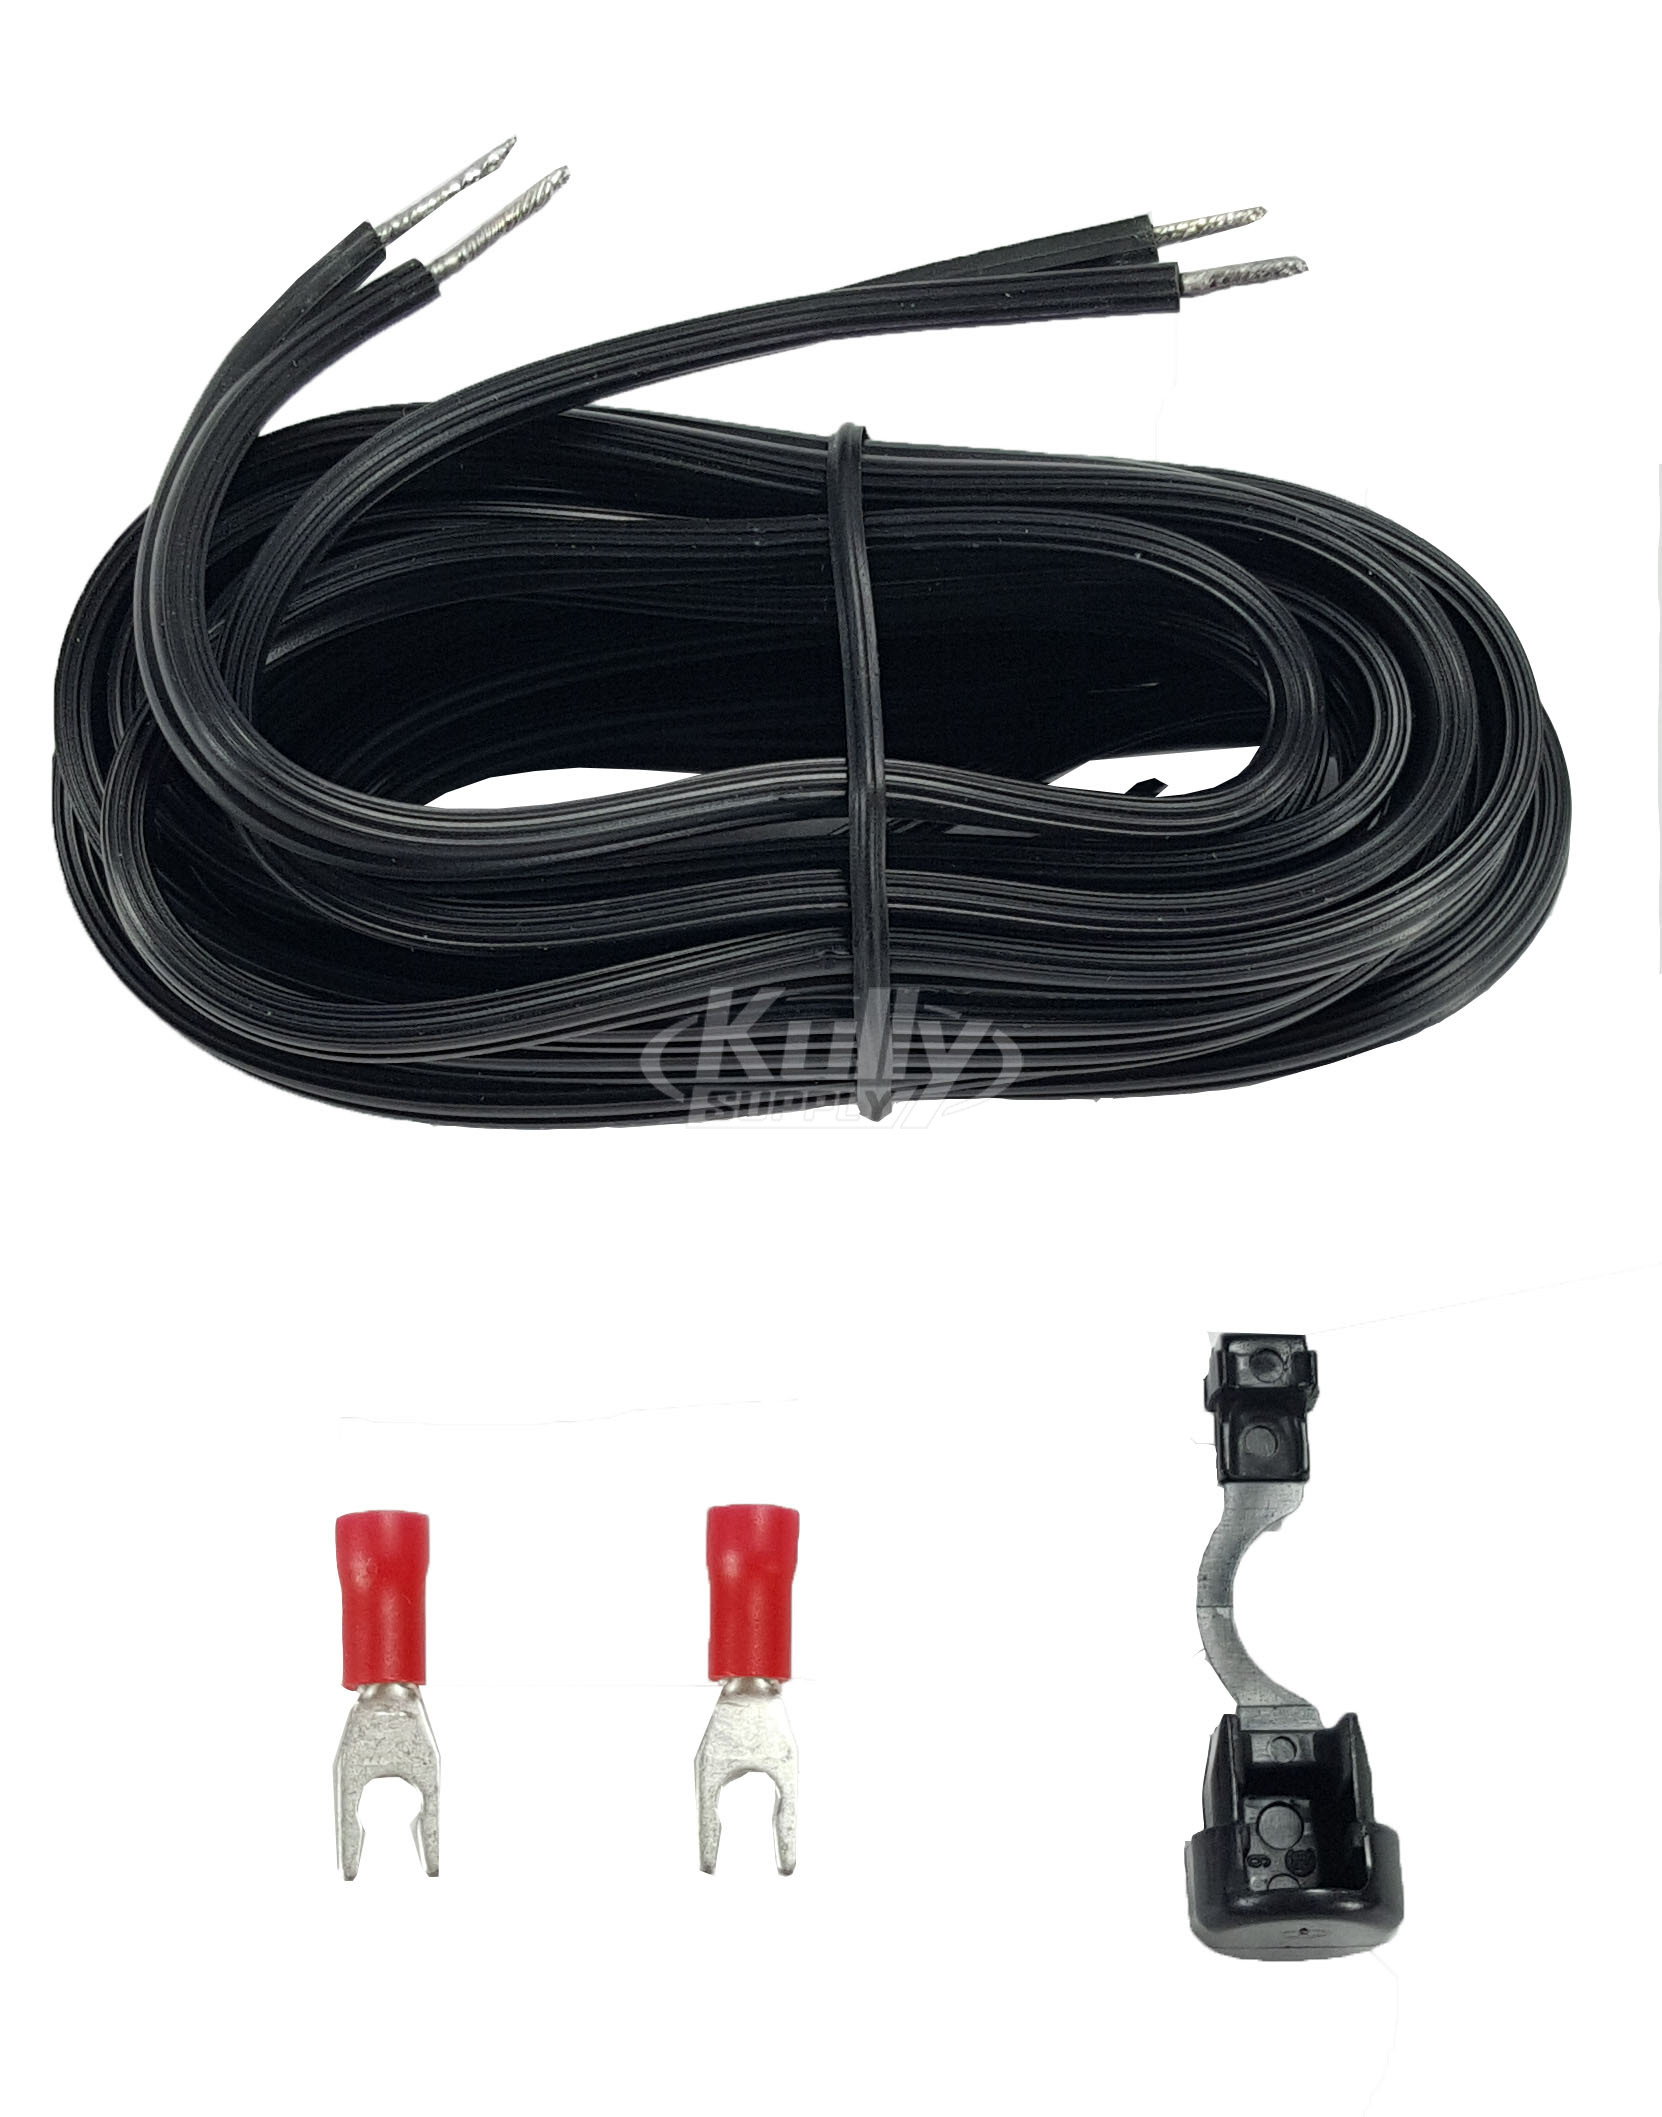 Sloan ETF-458-A Power Cord Kit